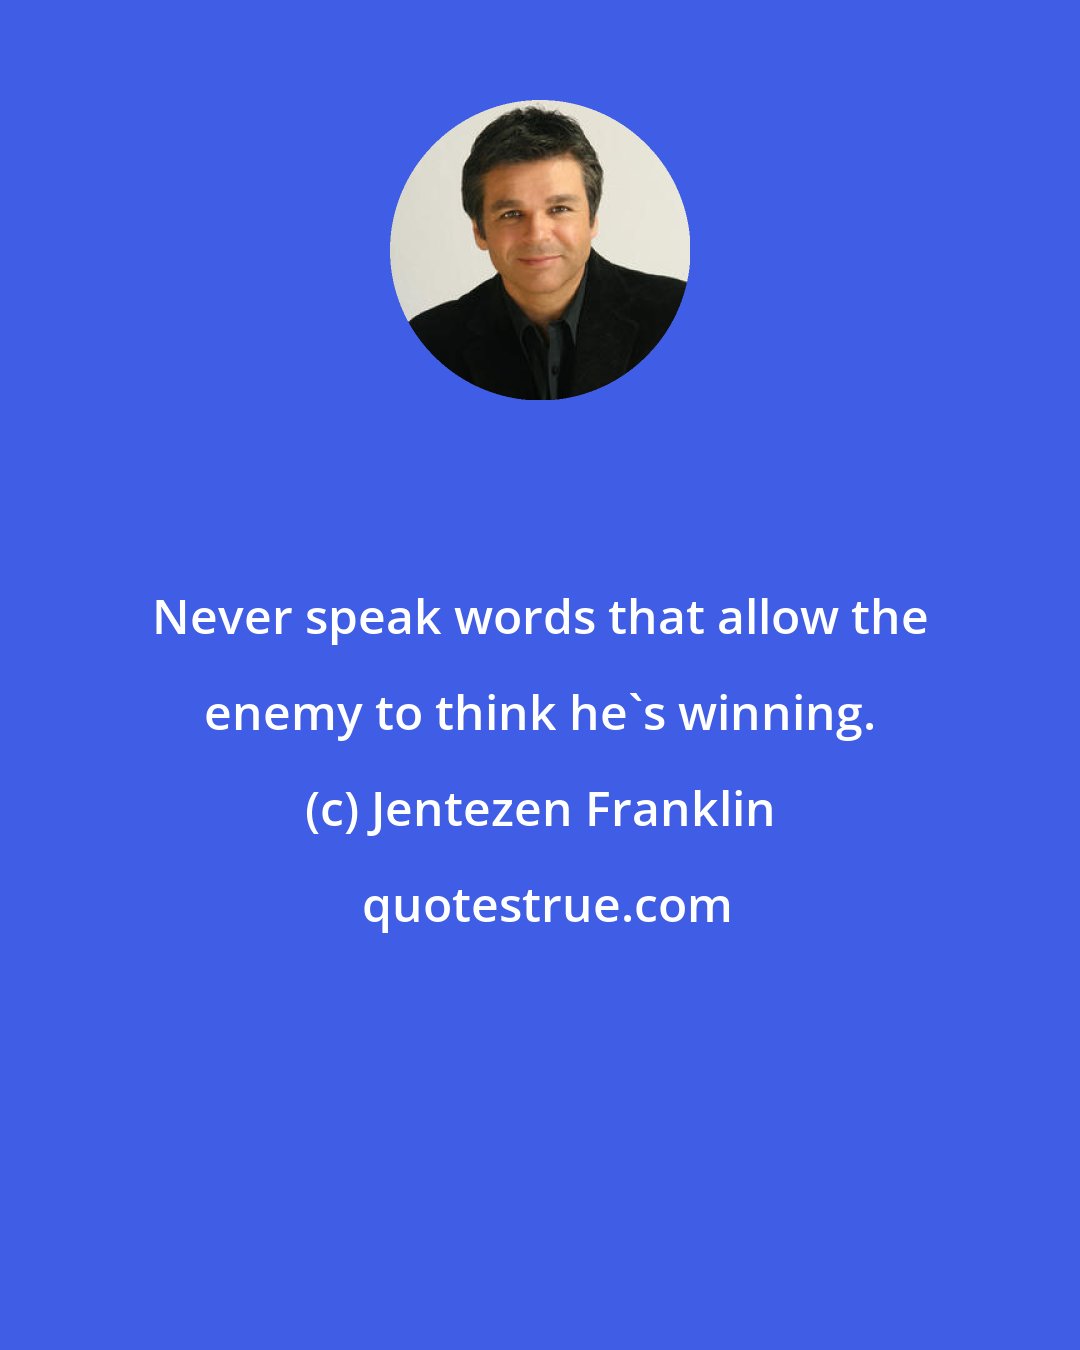 Jentezen Franklin: Never speak words that allow the enemy to think he's winning.